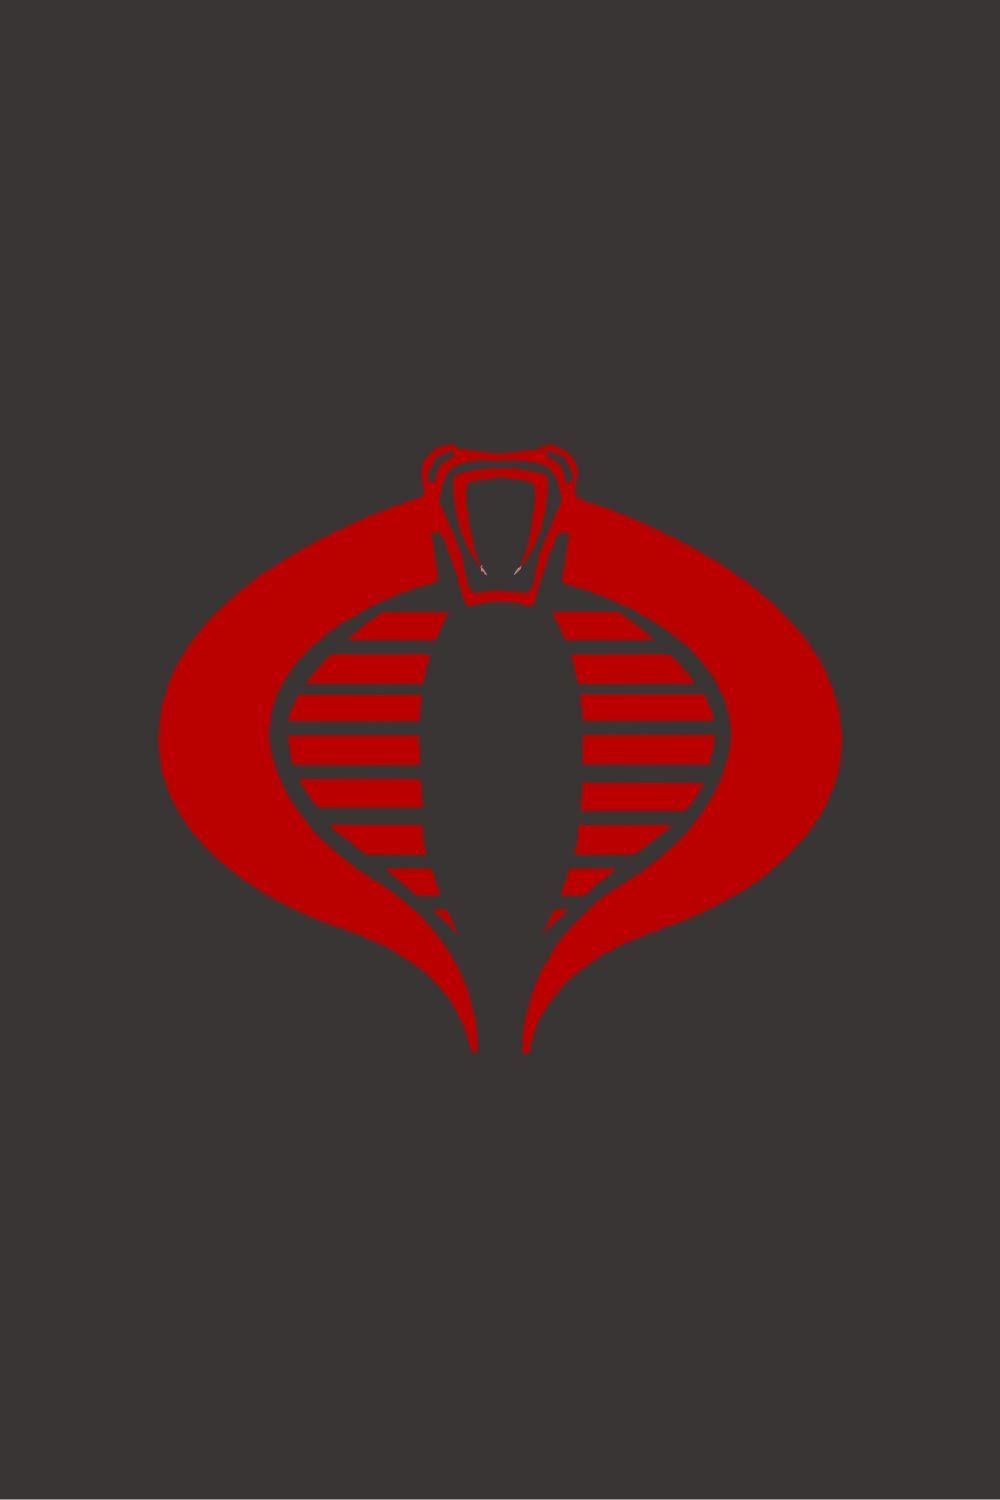 Firefly Cobra Enemy Logo. Gi joe cobra, Cobra art, Gi joe